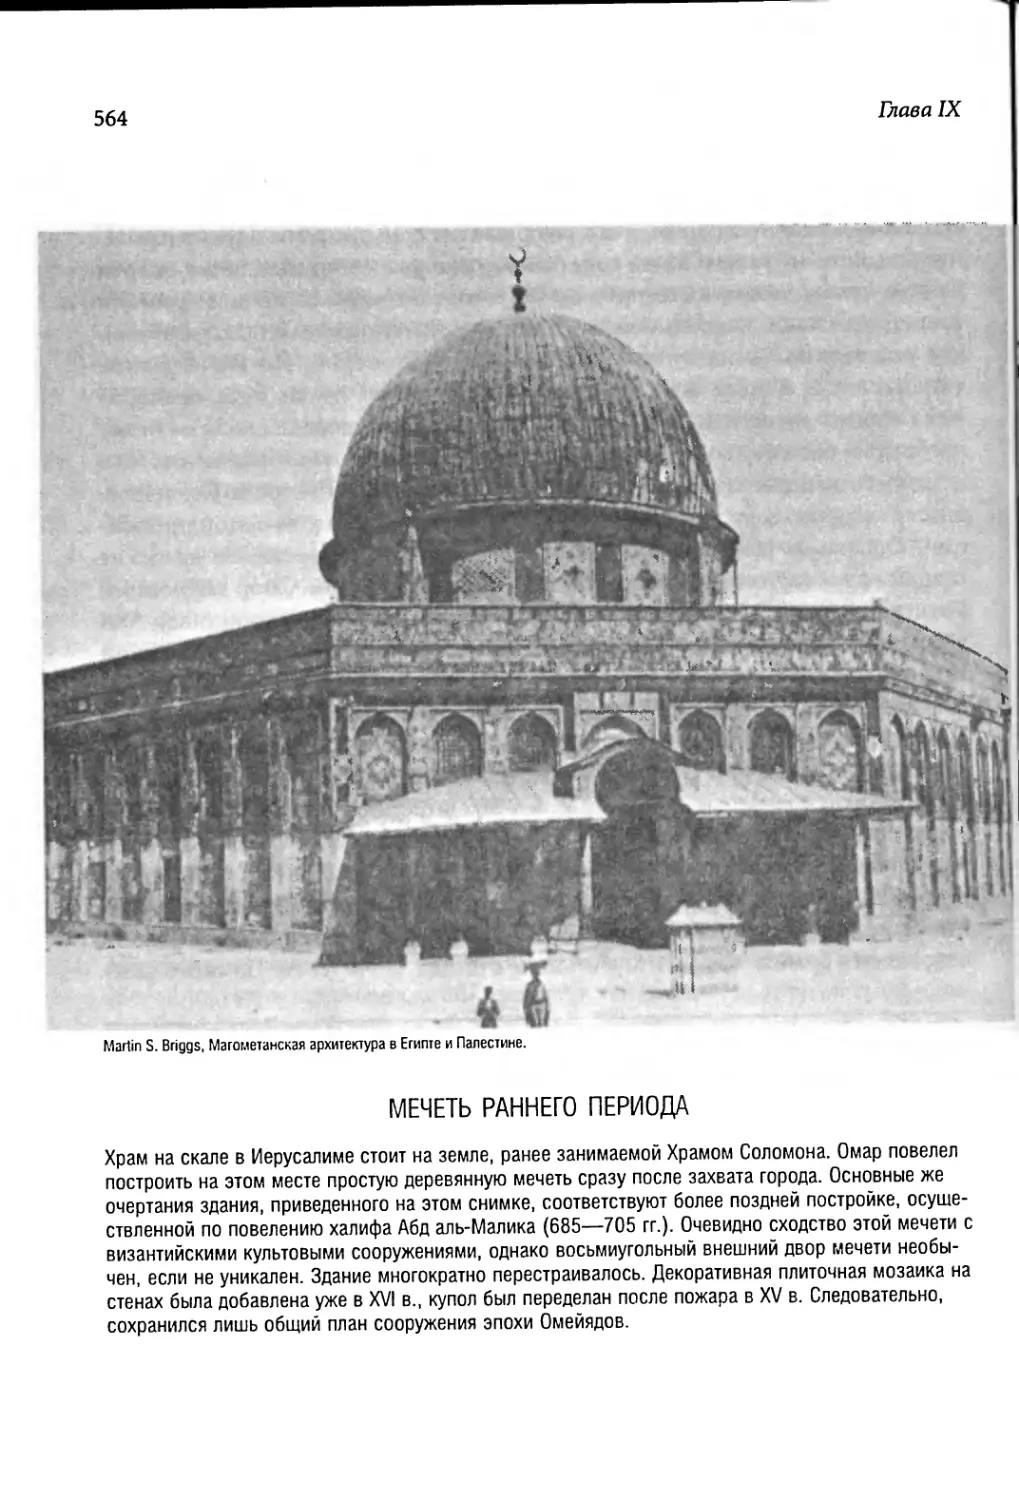 Мечеть раннего периода [564]